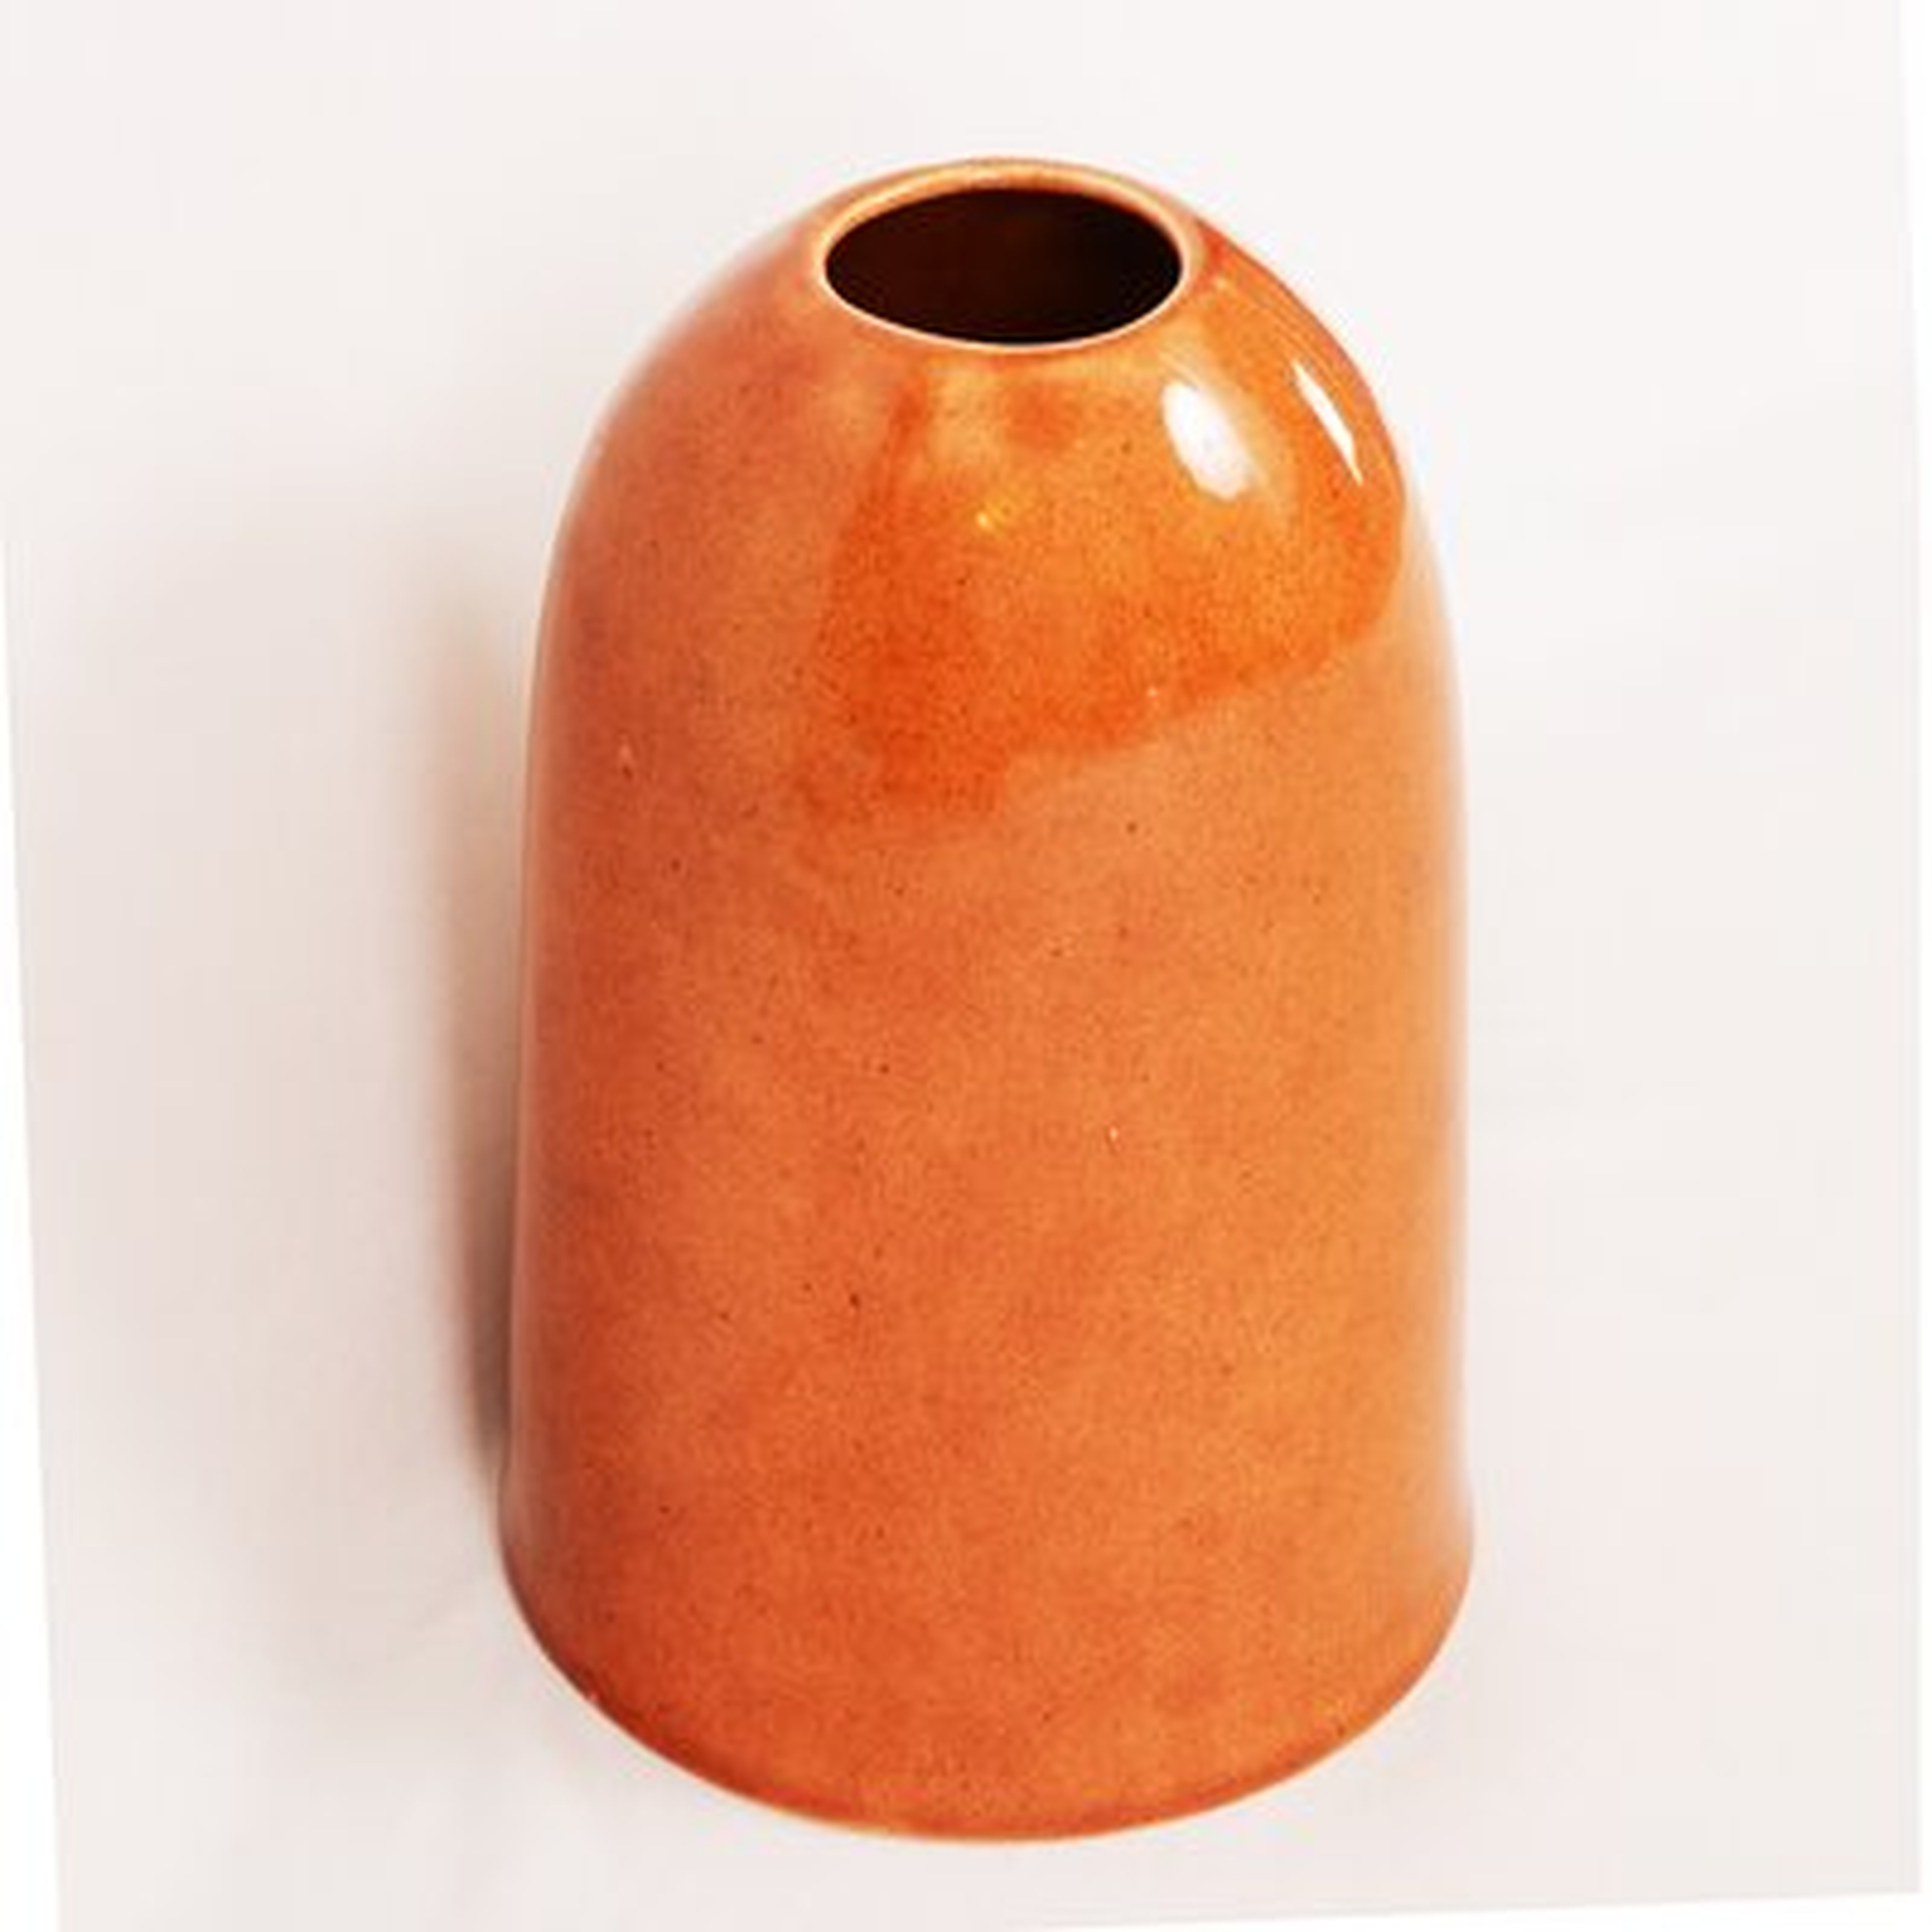 Lento Burnt Orange 8.75" Ceramic Table Vase - Birch Lane